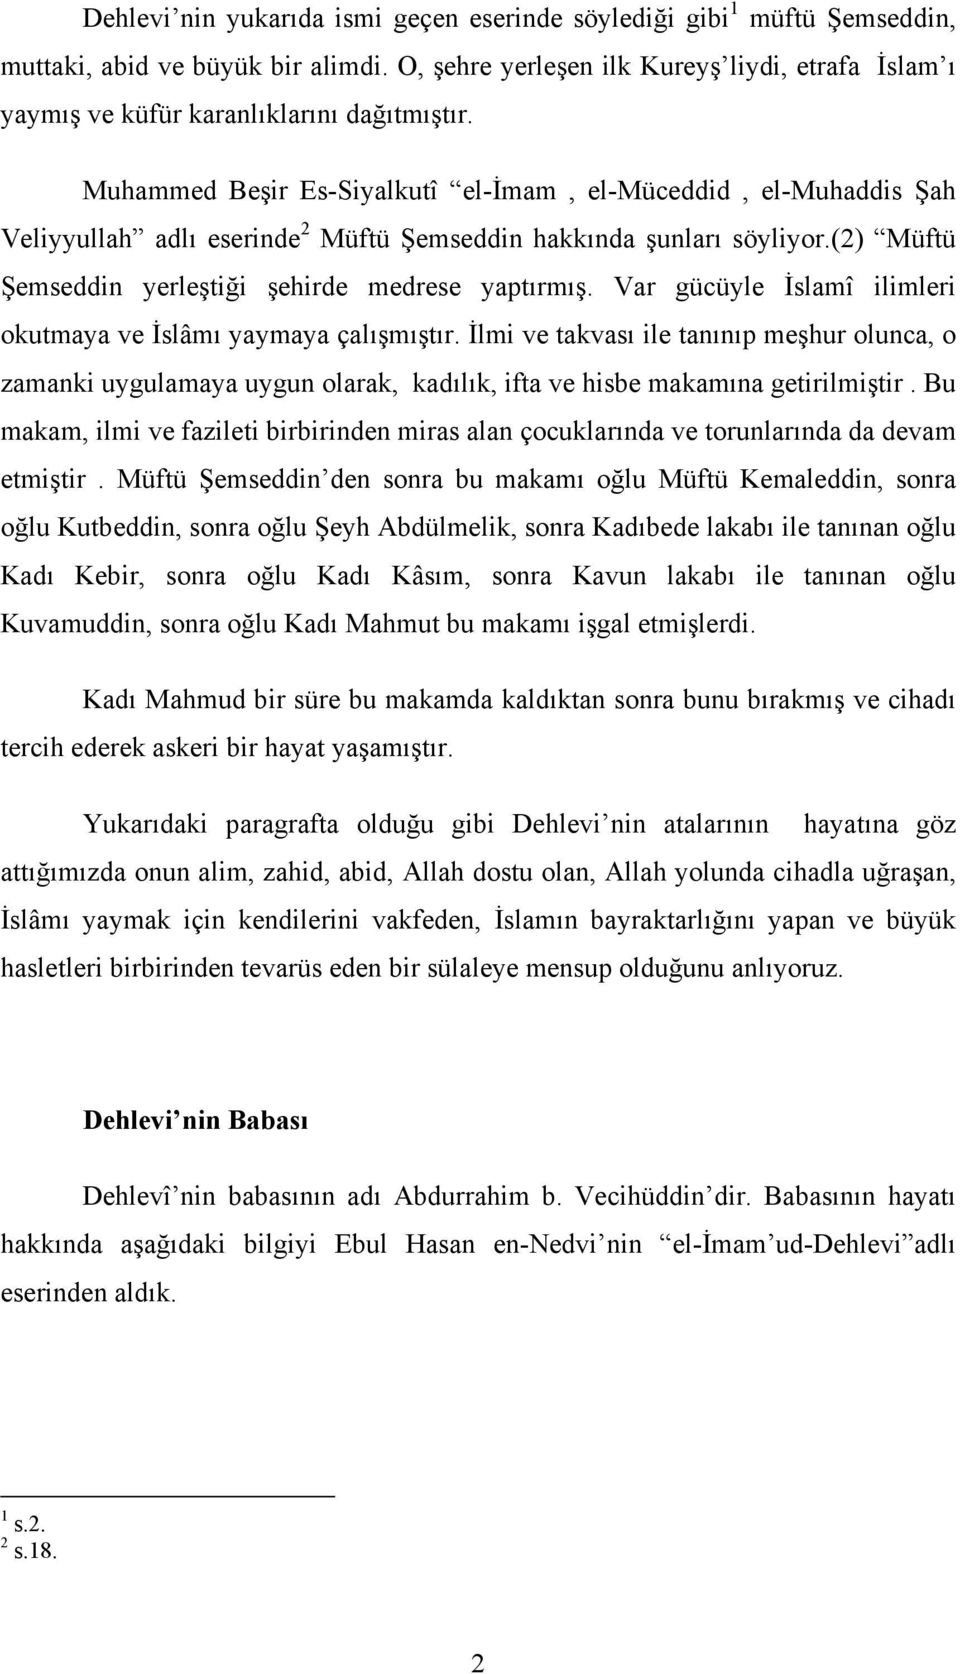 Muhammed Beşir Es-Siyalkutî el-đmam, el-müceddid, el-muhaddis Şah Veliyyullah adlı eserinde 2 Müftü Şemseddin hakkında şunları söyliyor.(2) Müftü Şemseddin yerleştiği şehirde medrese yaptırmış.